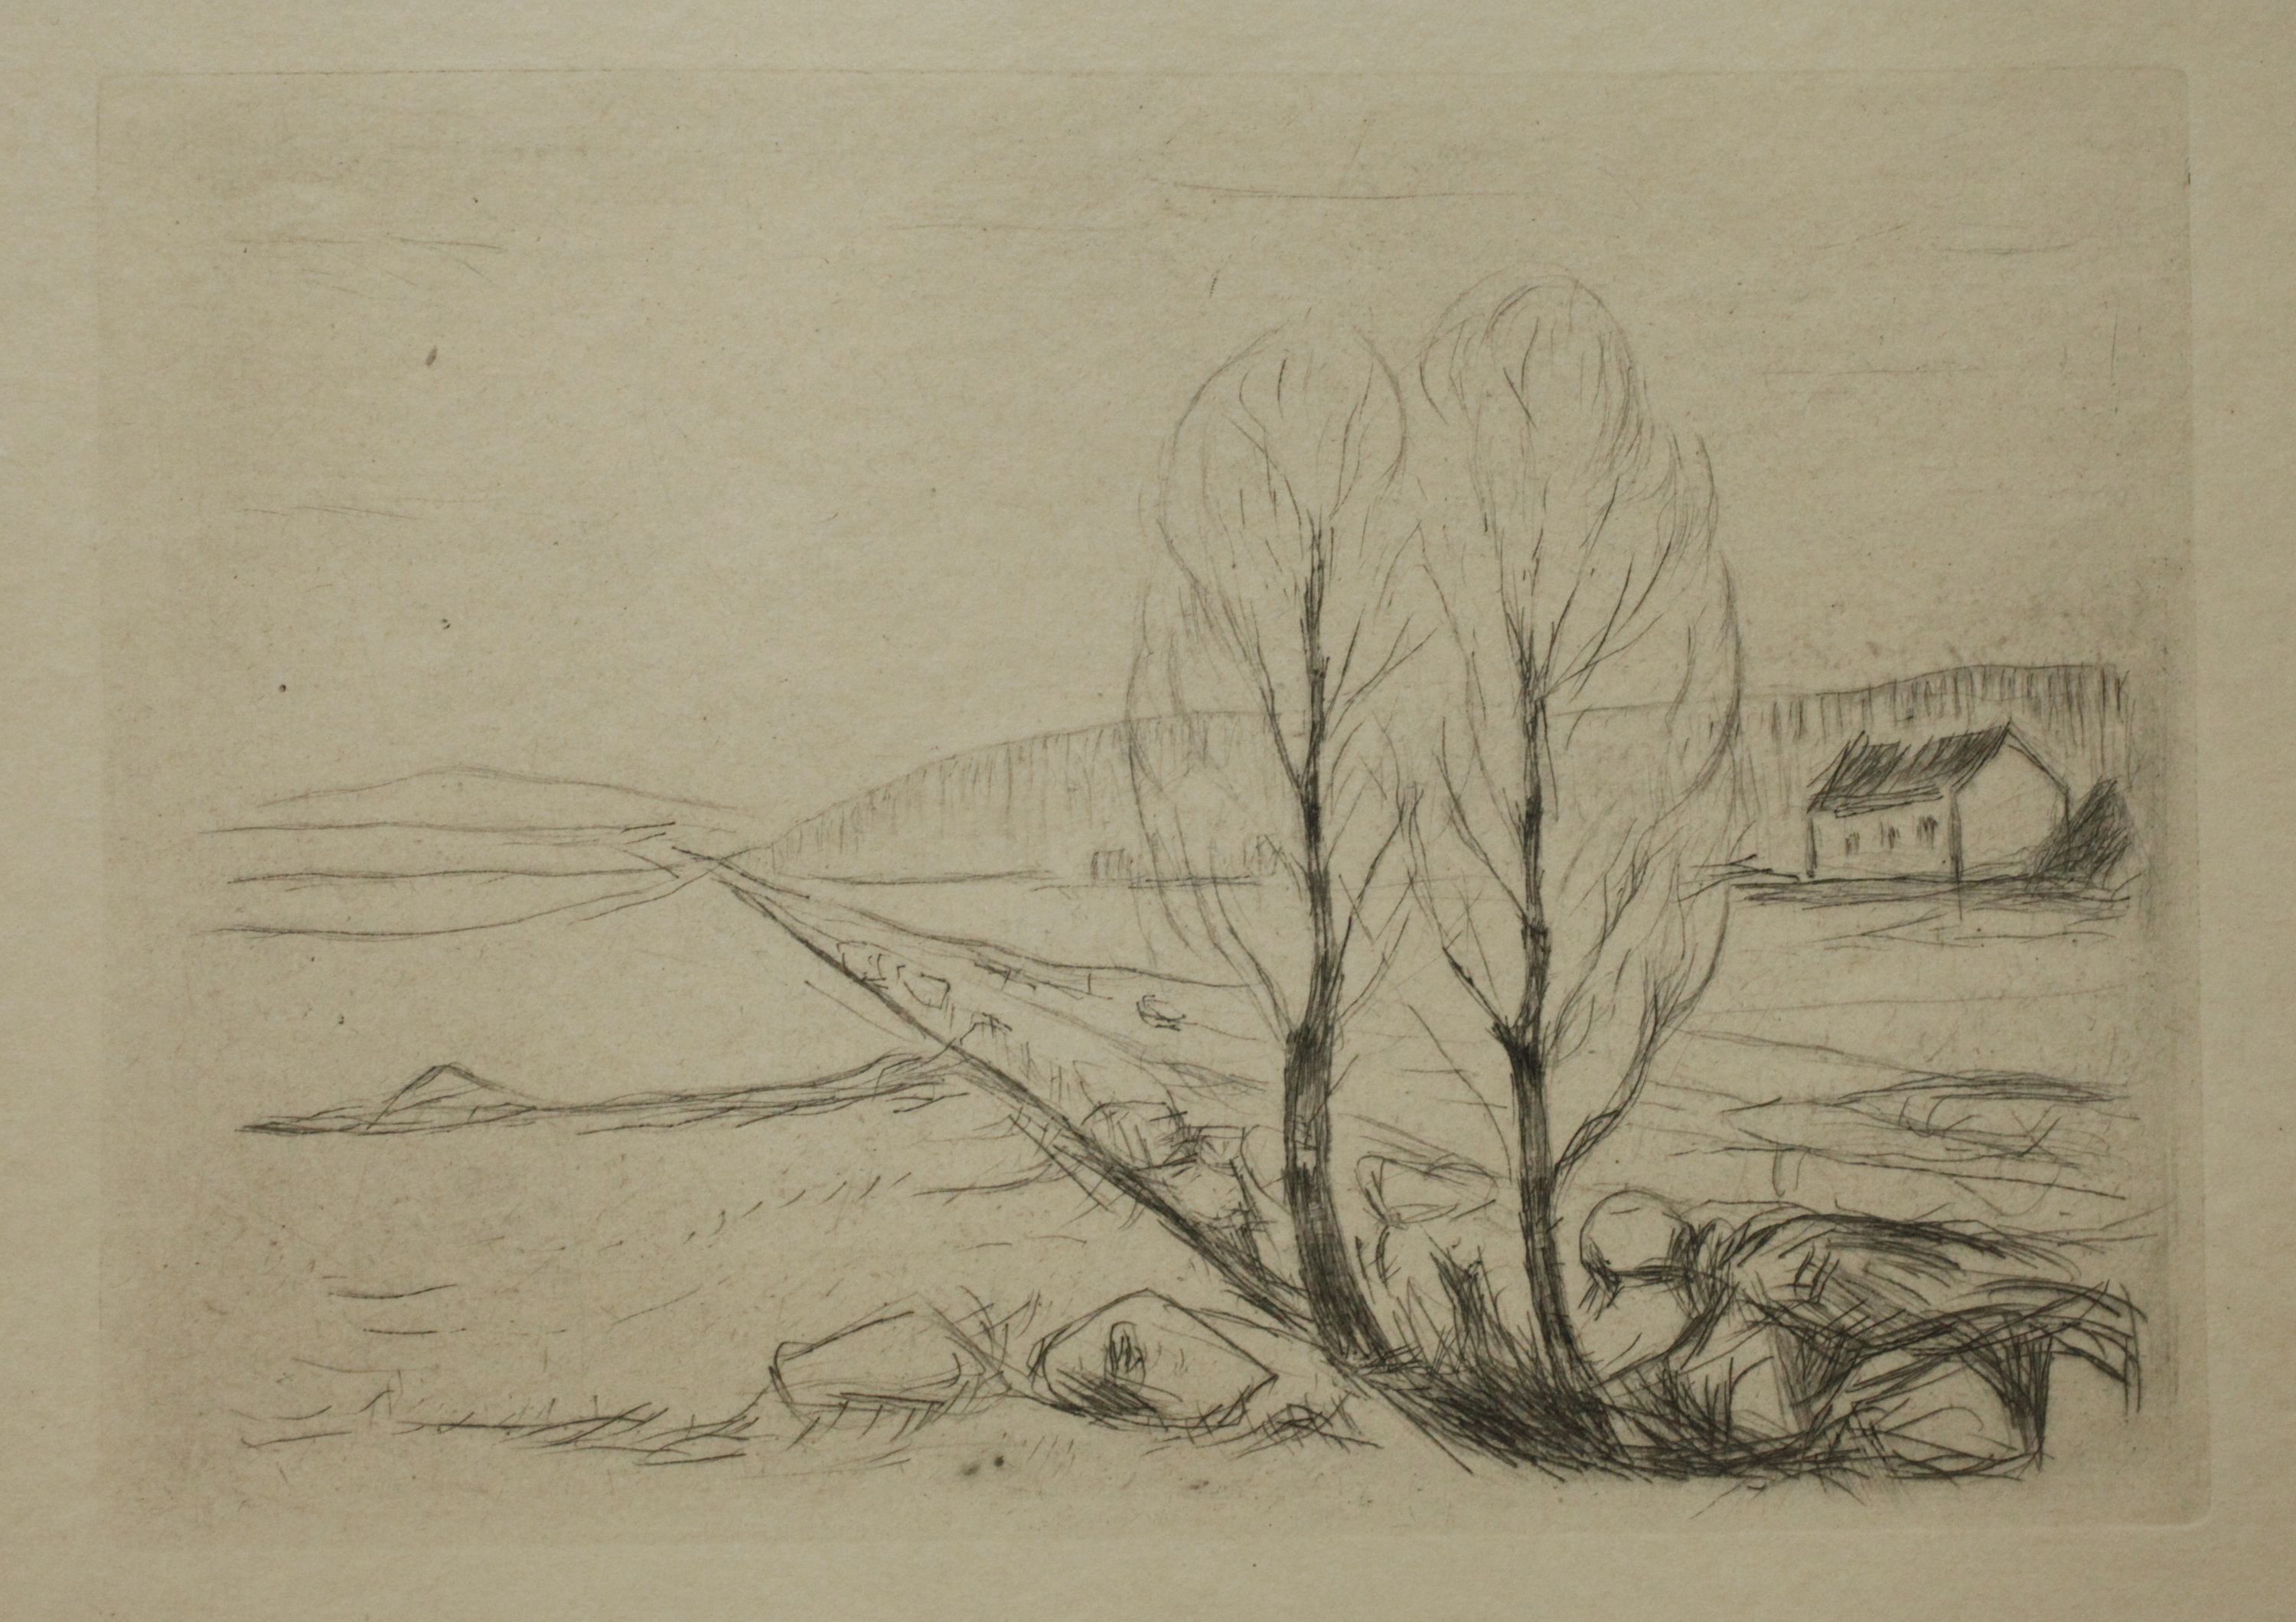 Edvard Munch, "Norwegian Landscape" - Image 5 of 6